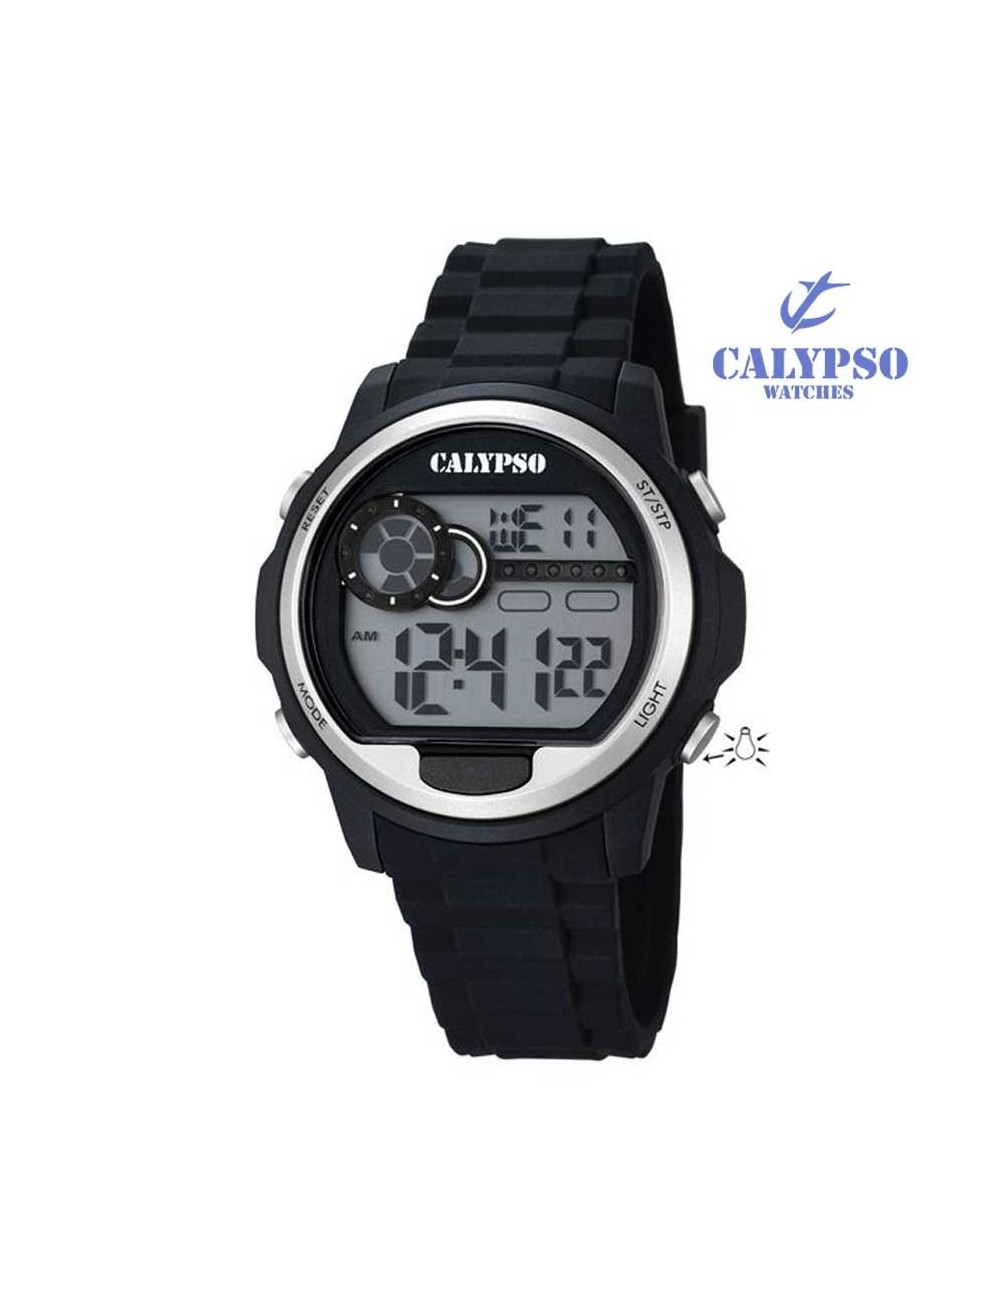 reloj-calypso-hombre-o-nino-digital-silicona-negro-plateado-k5667-1